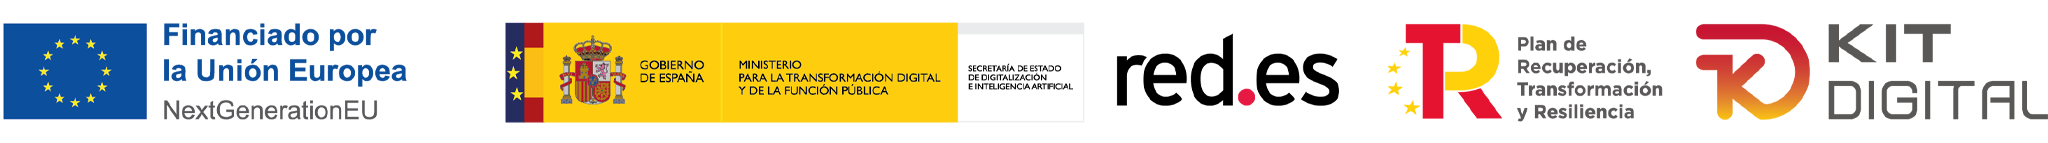 Logo-Digitalizadores-Kit-Digital-banner